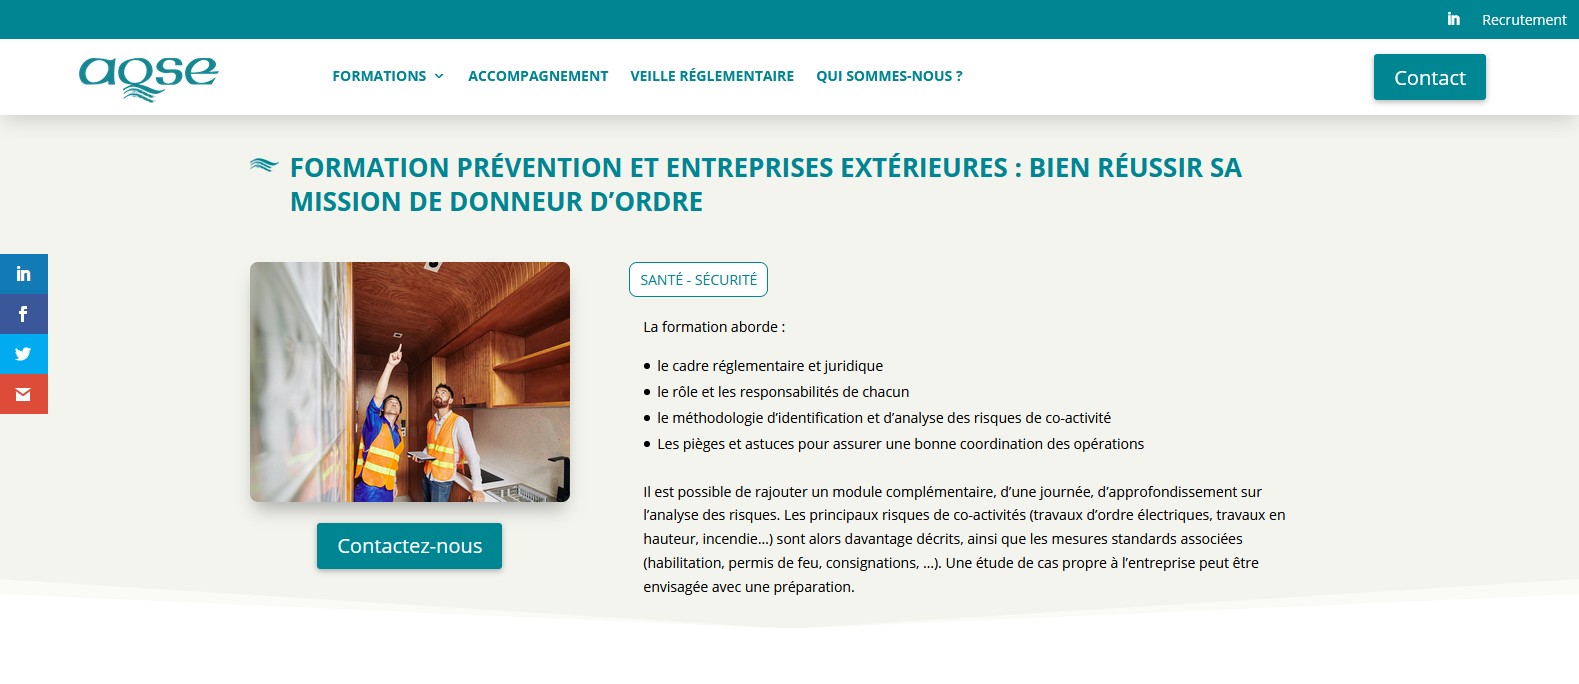 AQSE-france.fr Formation entreprises extérieures et sécurité